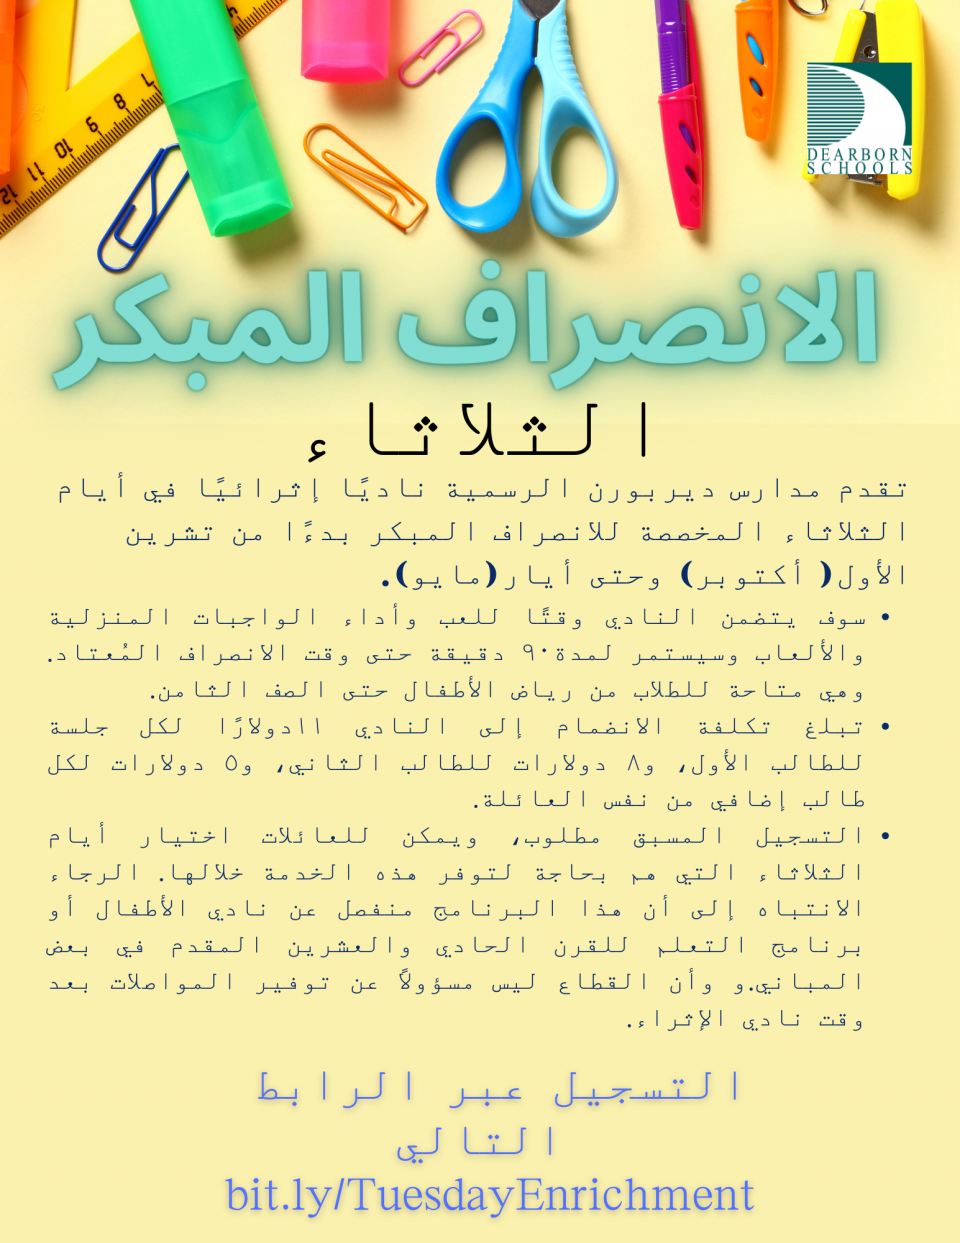 Early Release Enrichment flyer in Arabic